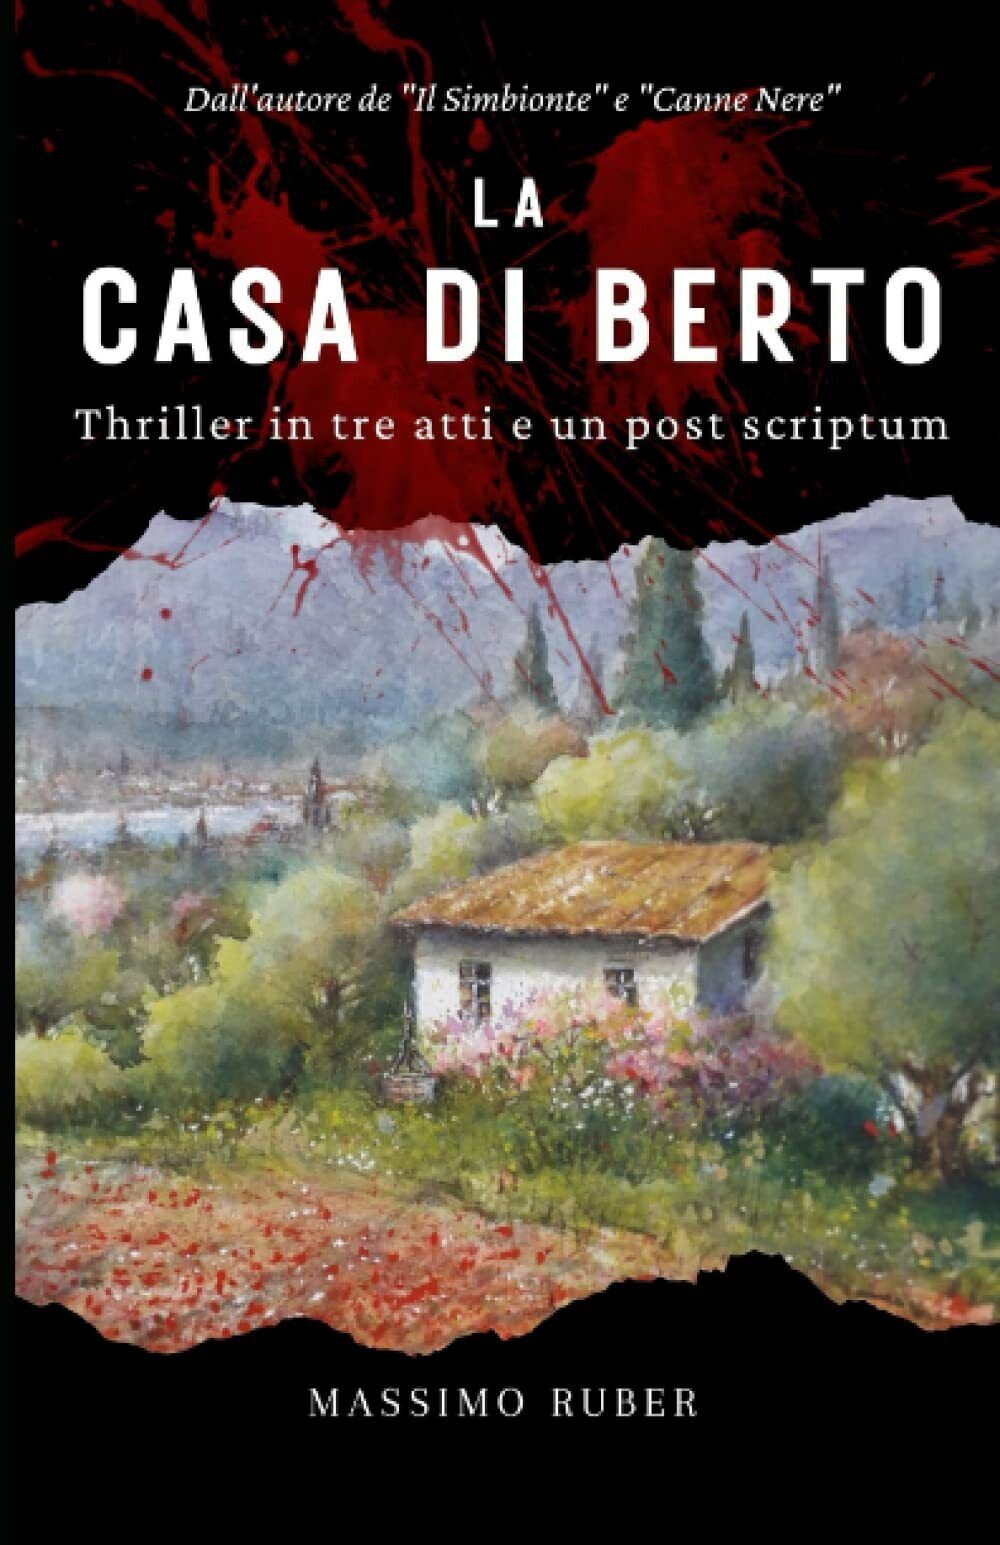 La casa di Berto: Thriller in tre atti e un post scriptum di Massimo Ruber,  202